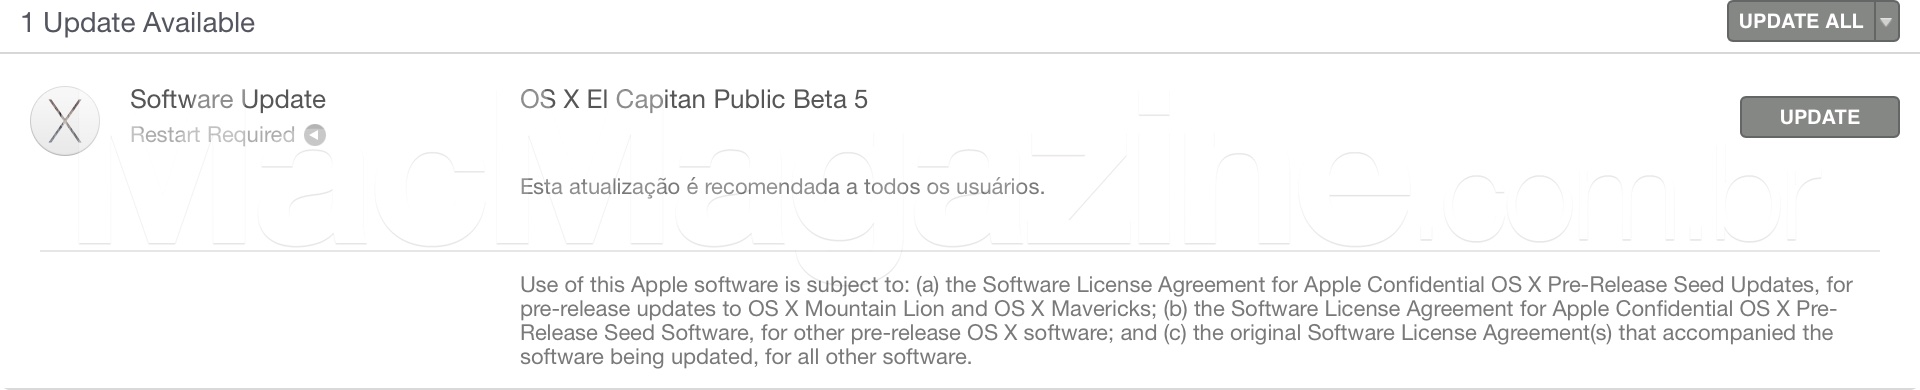 OS X El Capitan 10.11 public beta